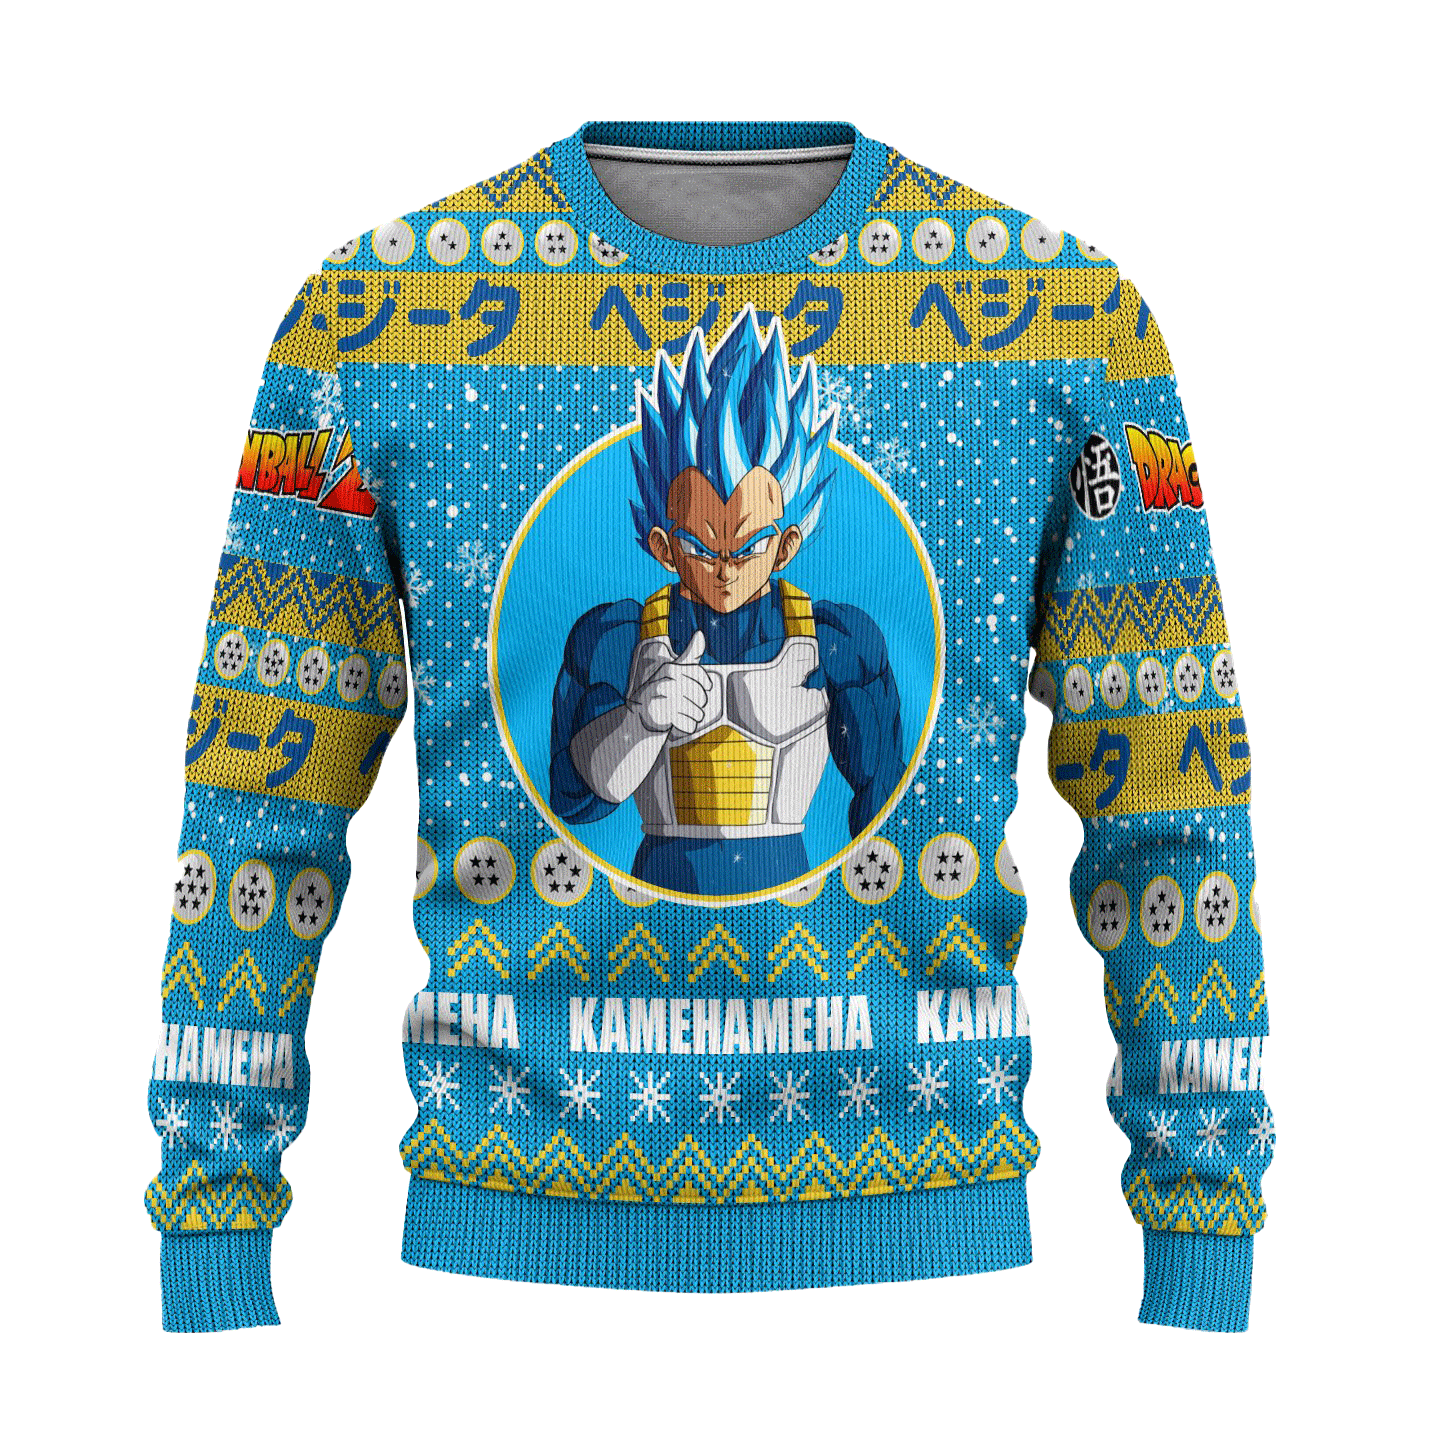 Vegeta Anime Ugly Christmas Sweater Dragon Ball Z Xmas Gift